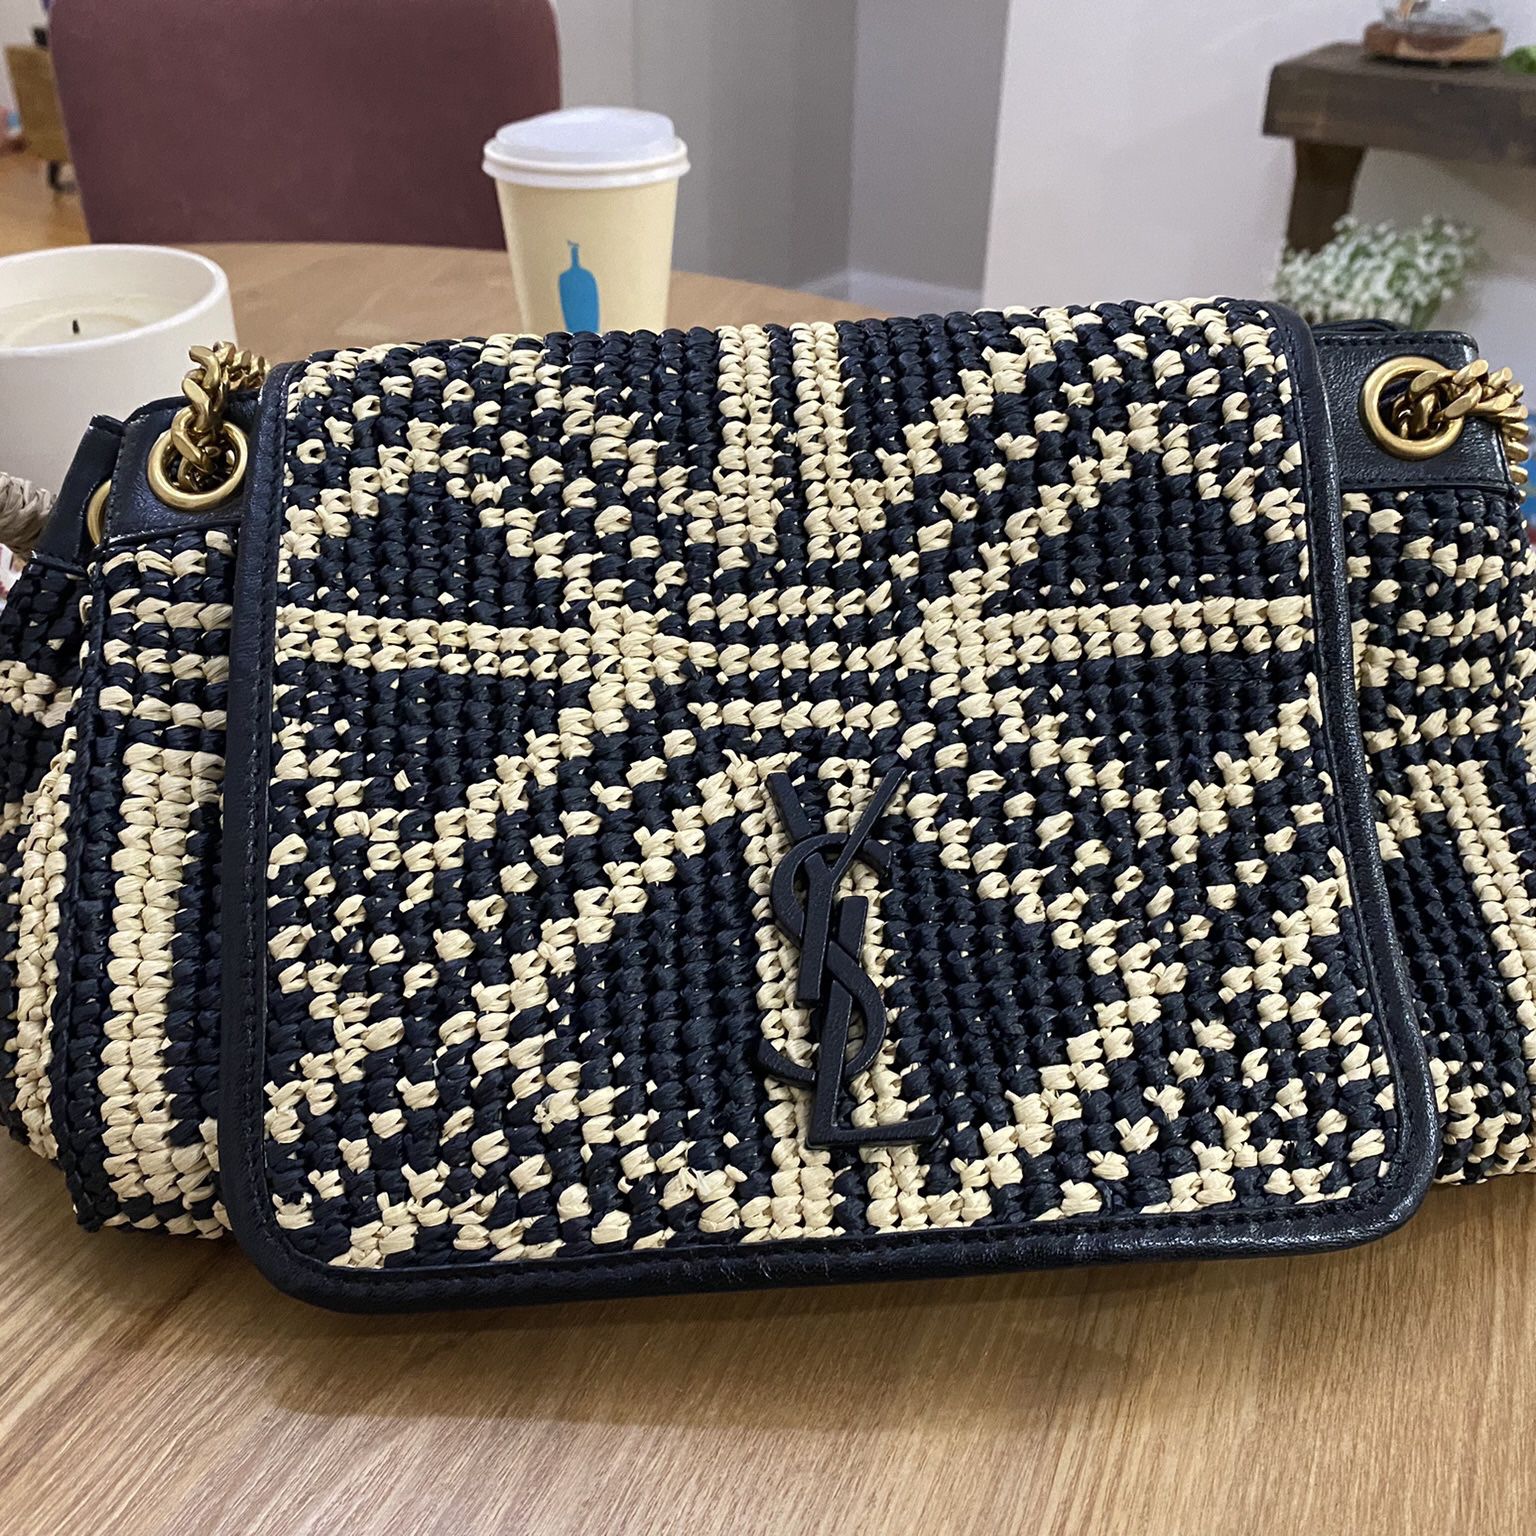 Nolita cloth handbag